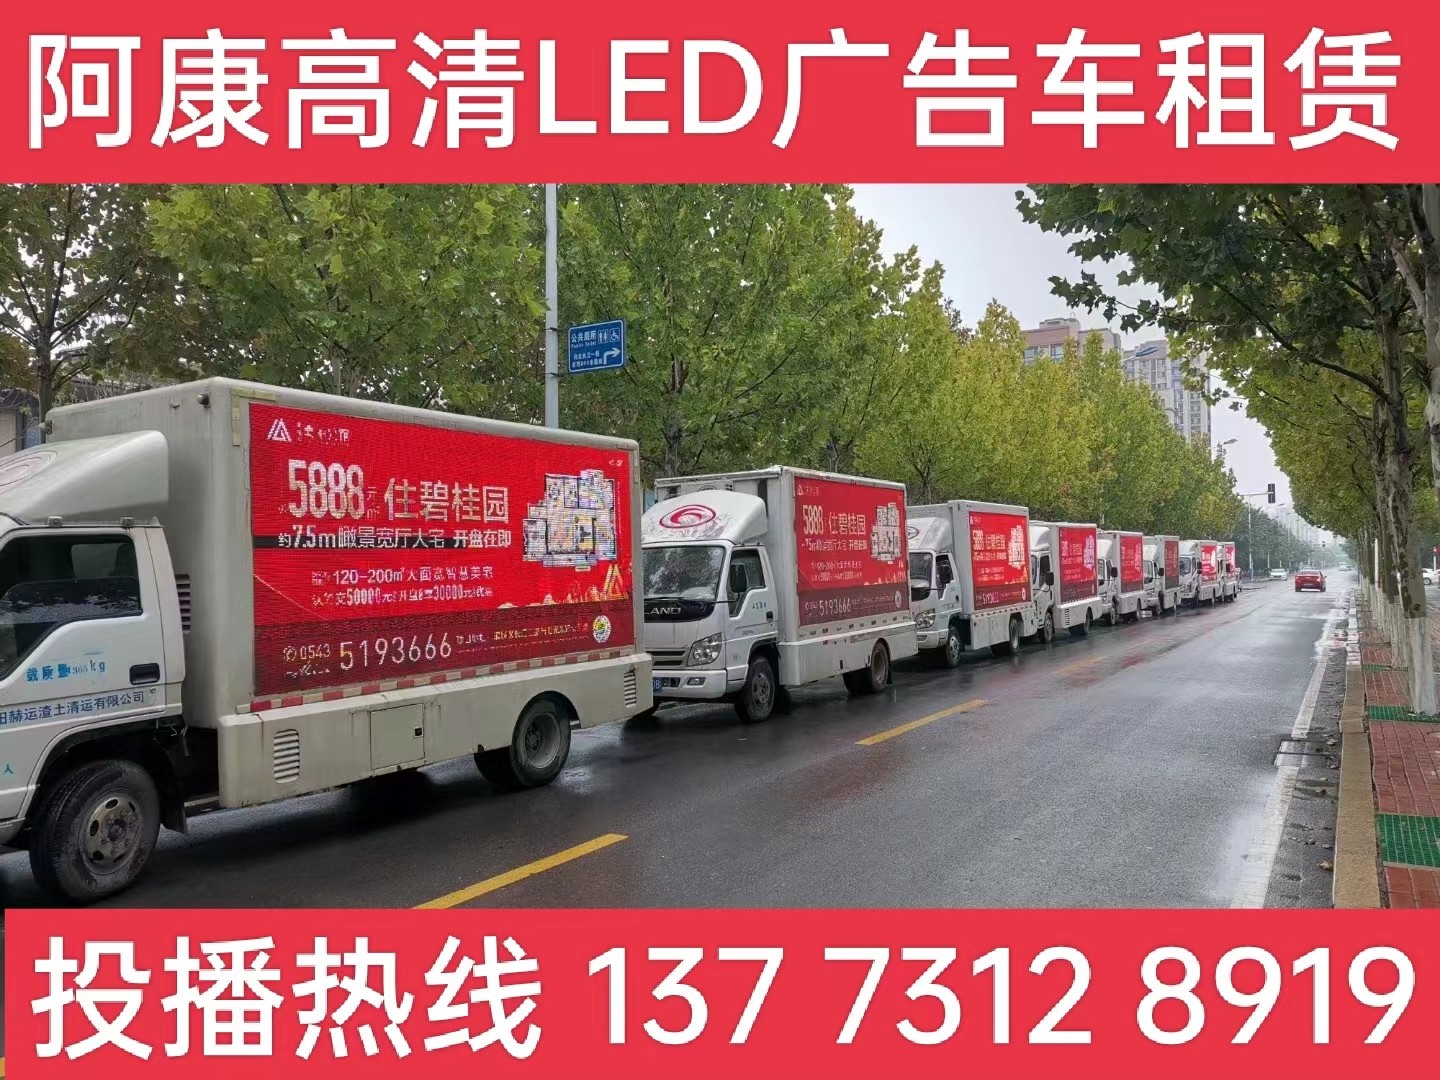 江宁区宣传车租赁公司-楼盘LED广告车投放